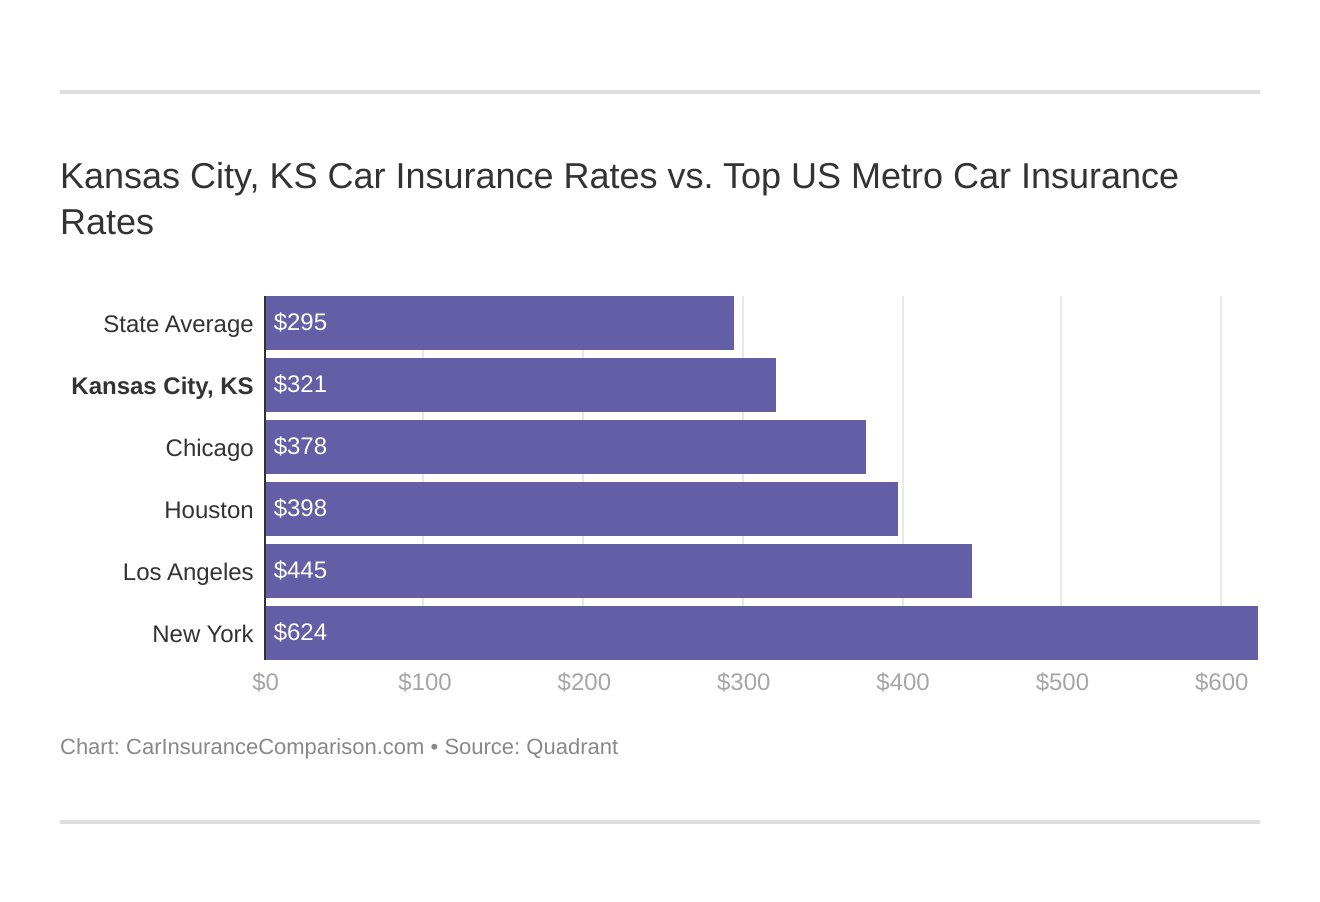 Kansas City, KS Car Insurance Rates vs. Top US Metro Car Insurance Rates